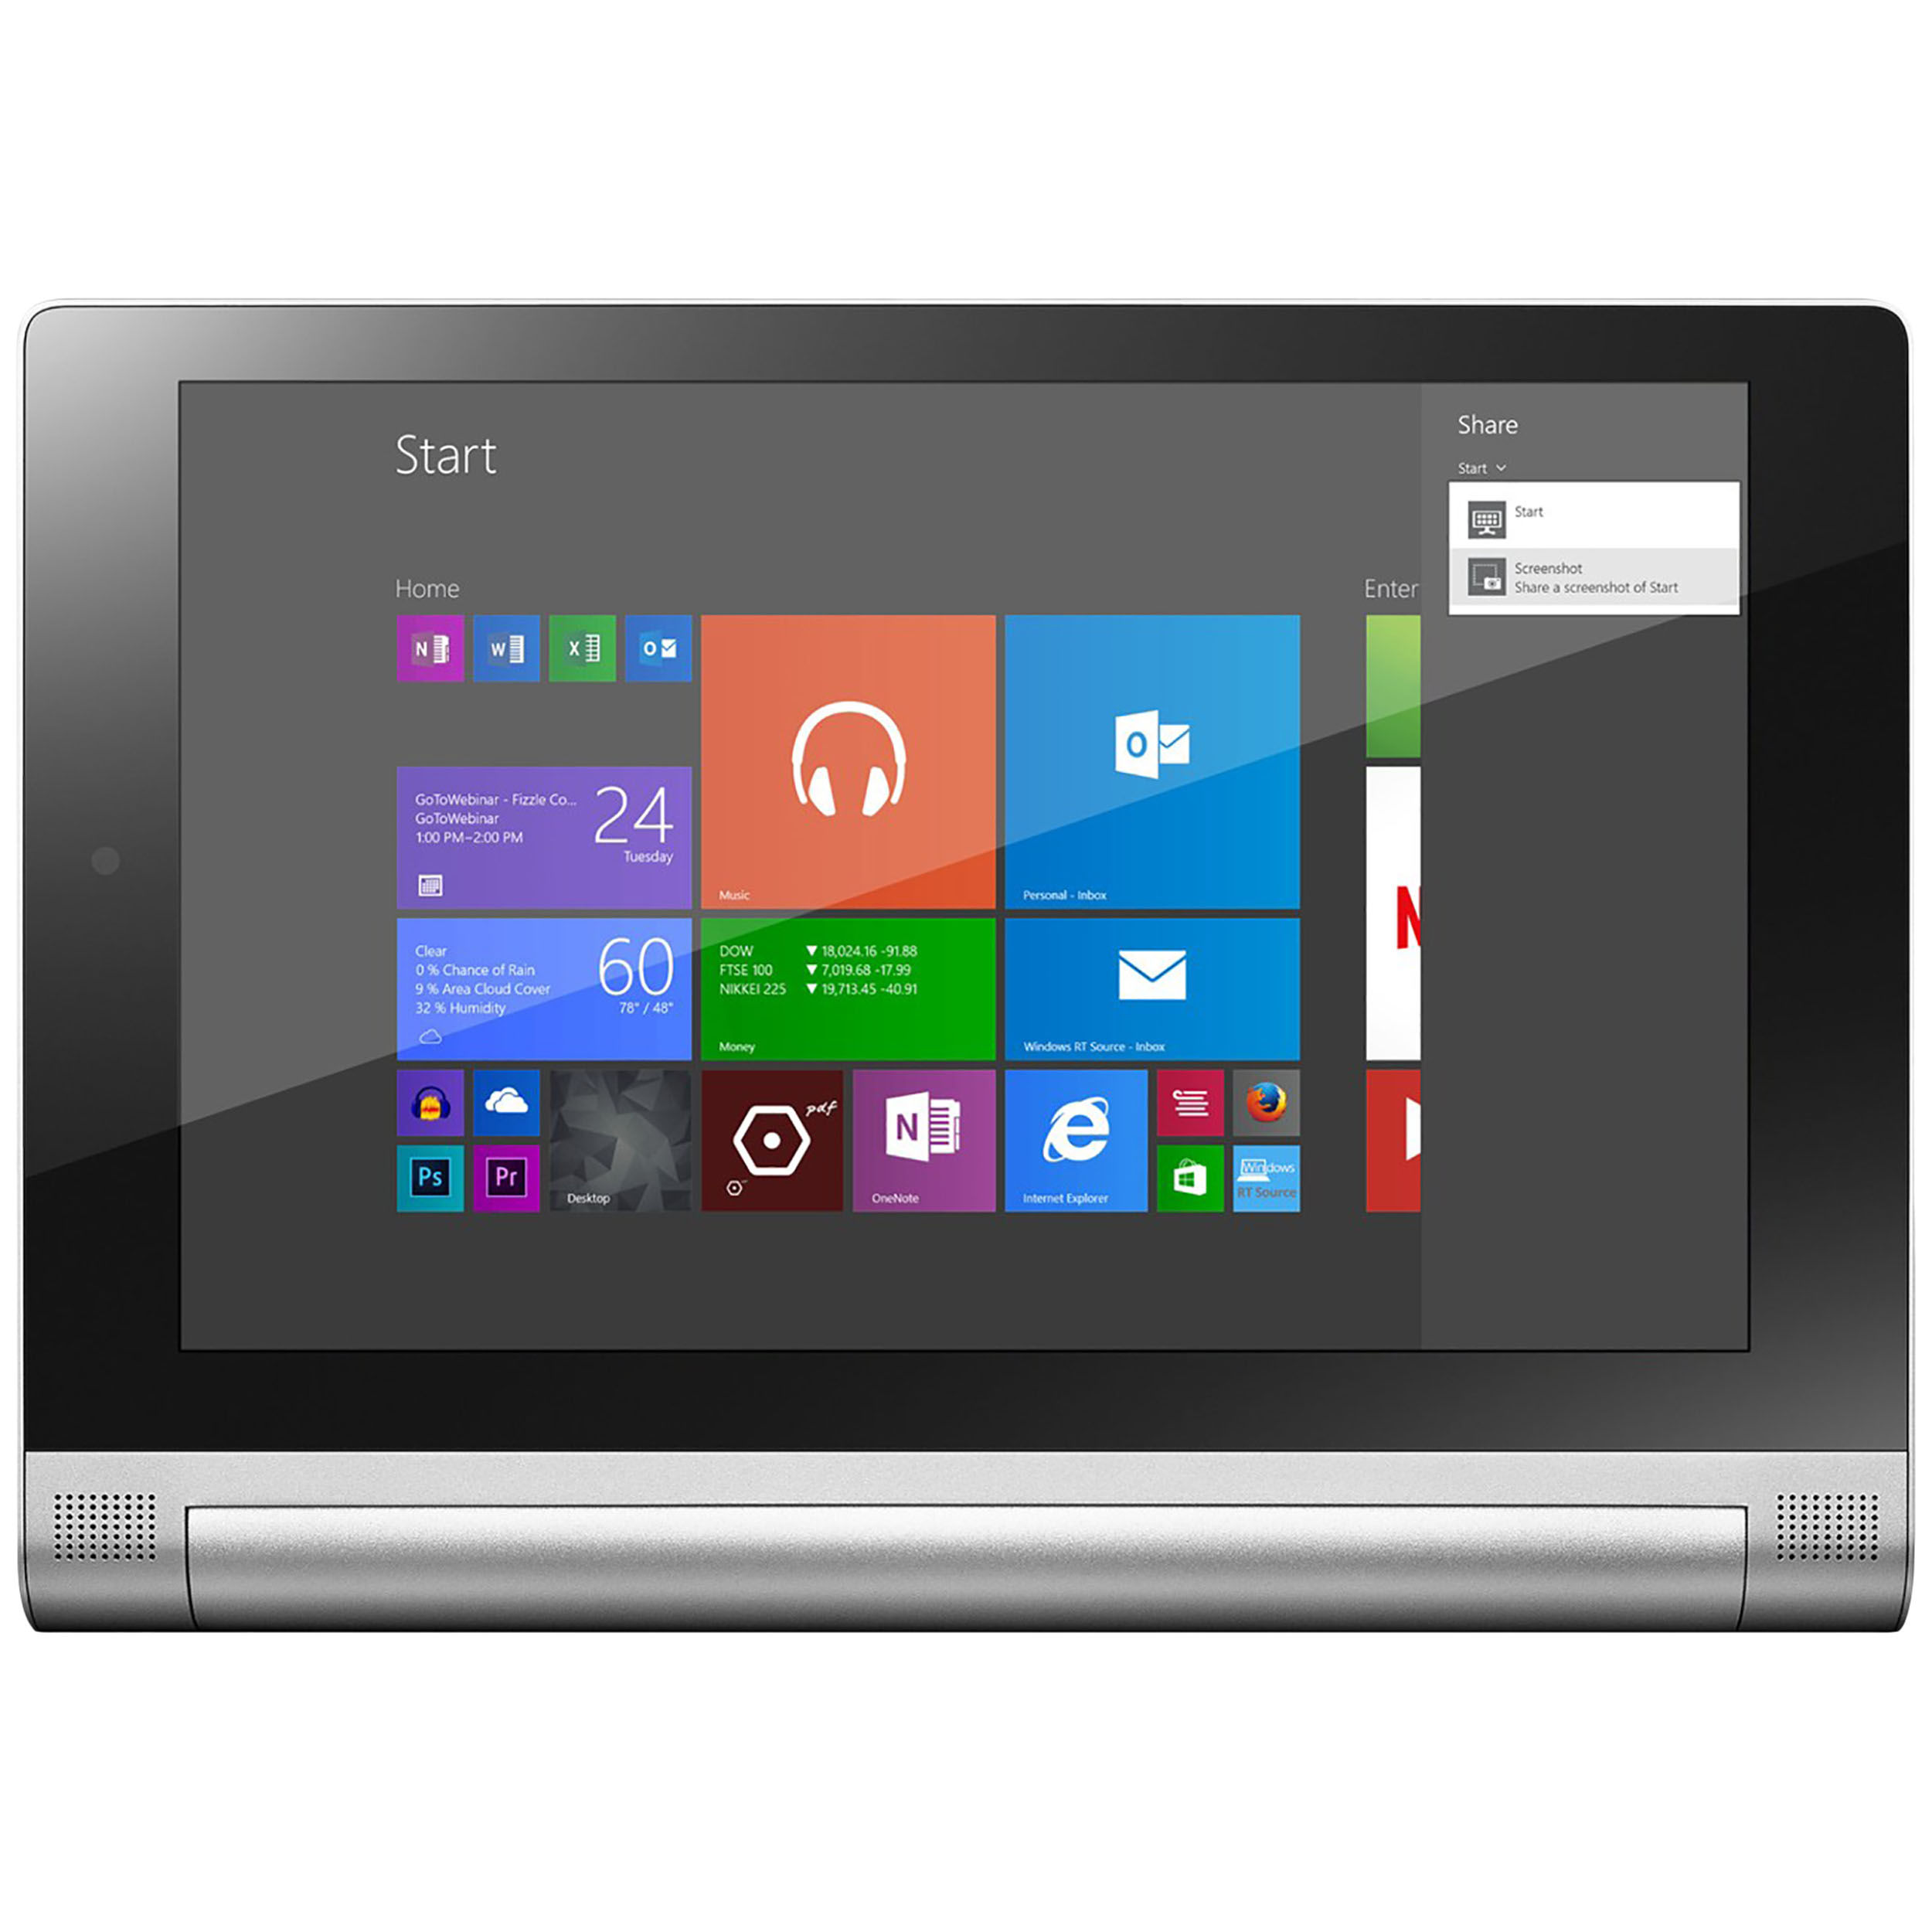 تبلت لنوو مدل Yoga Tablet 2 with Windows 851F ظرفیت 32 گیگابایت